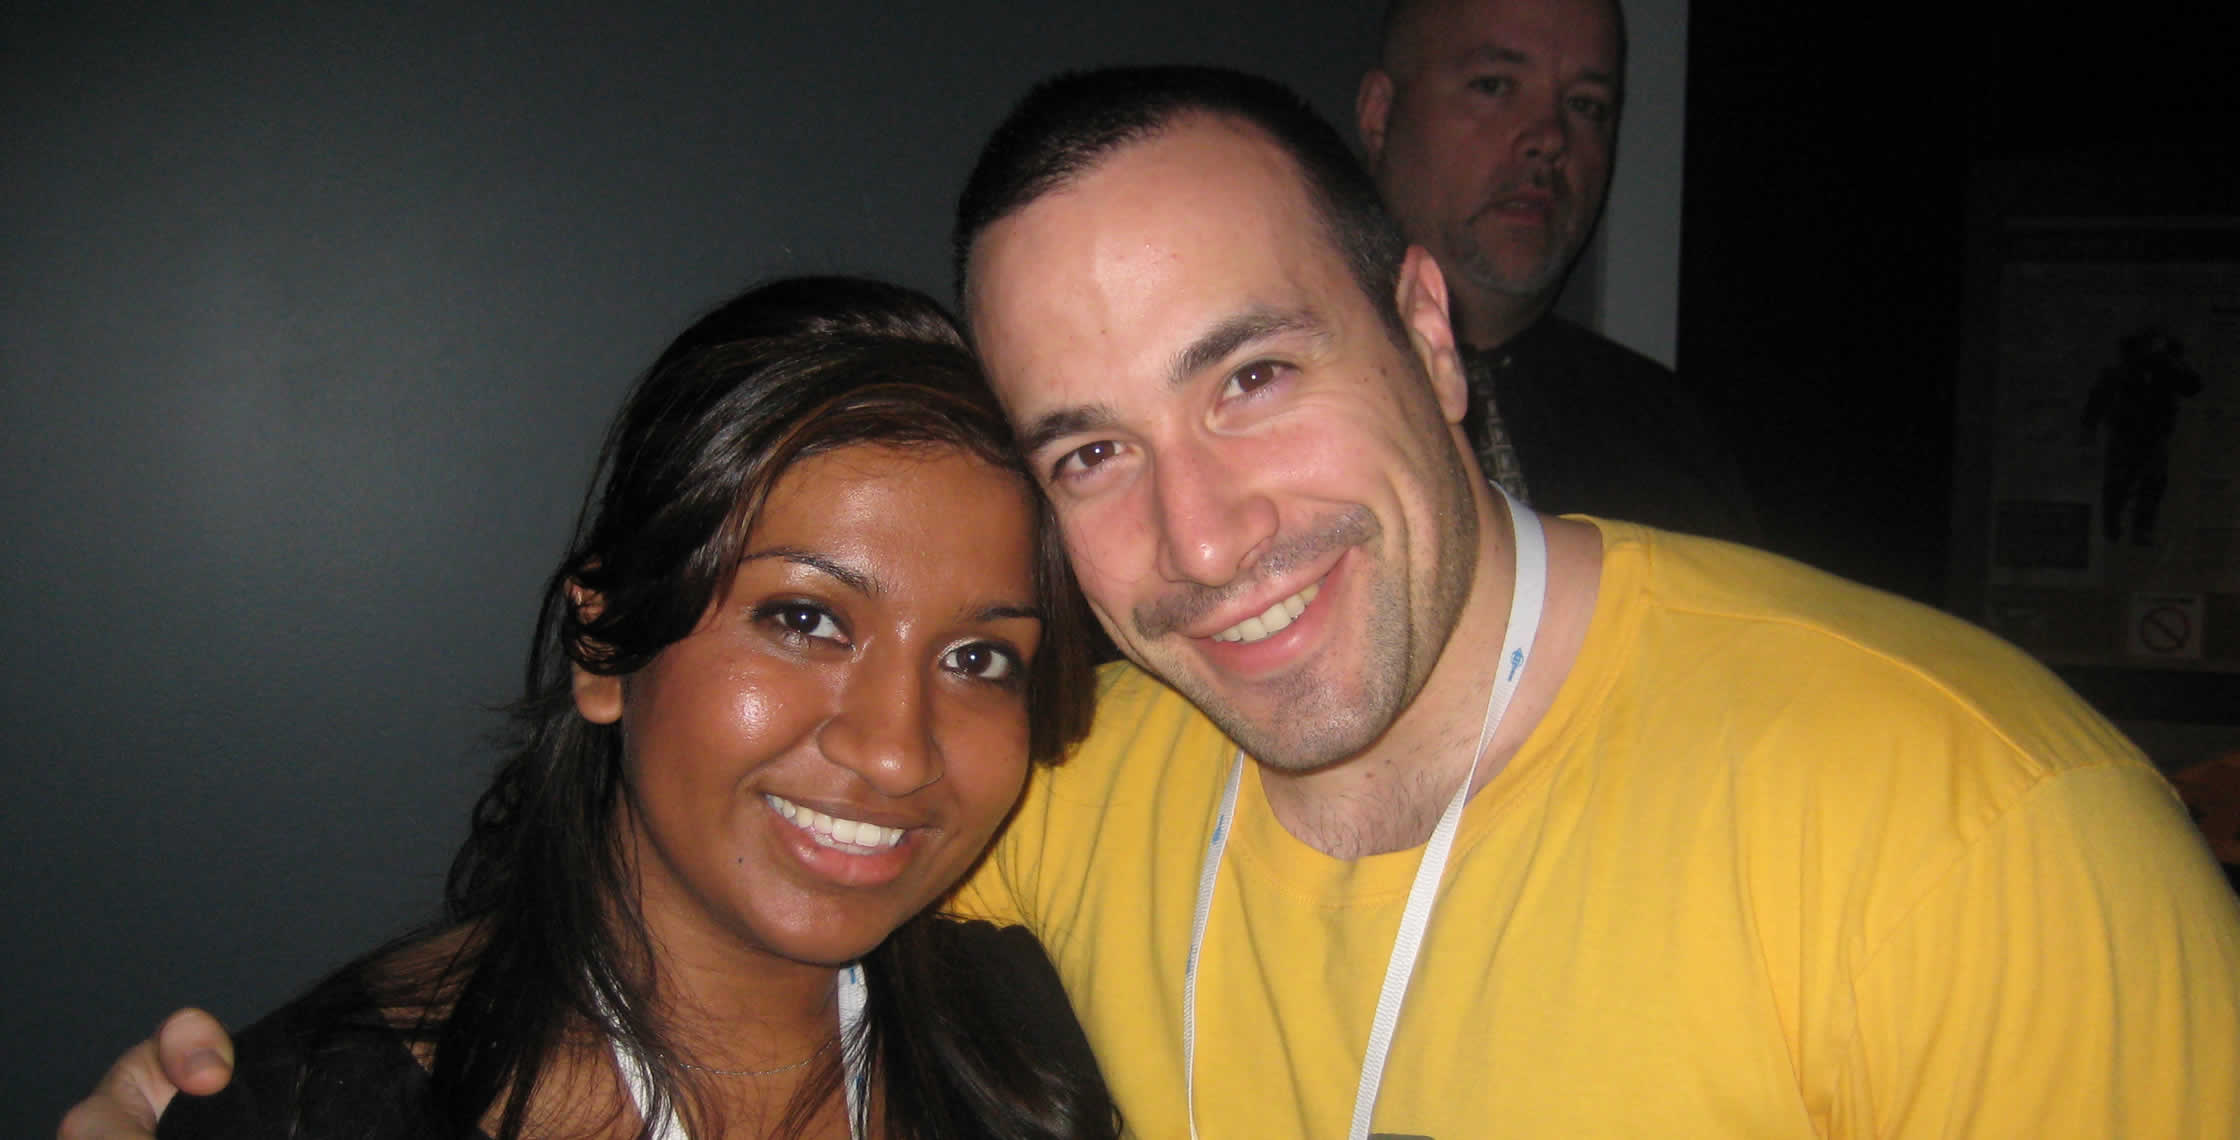 Ben Nadel at CFUNITED 2008 (Washington, D.C.) with: Nafisa Sabu